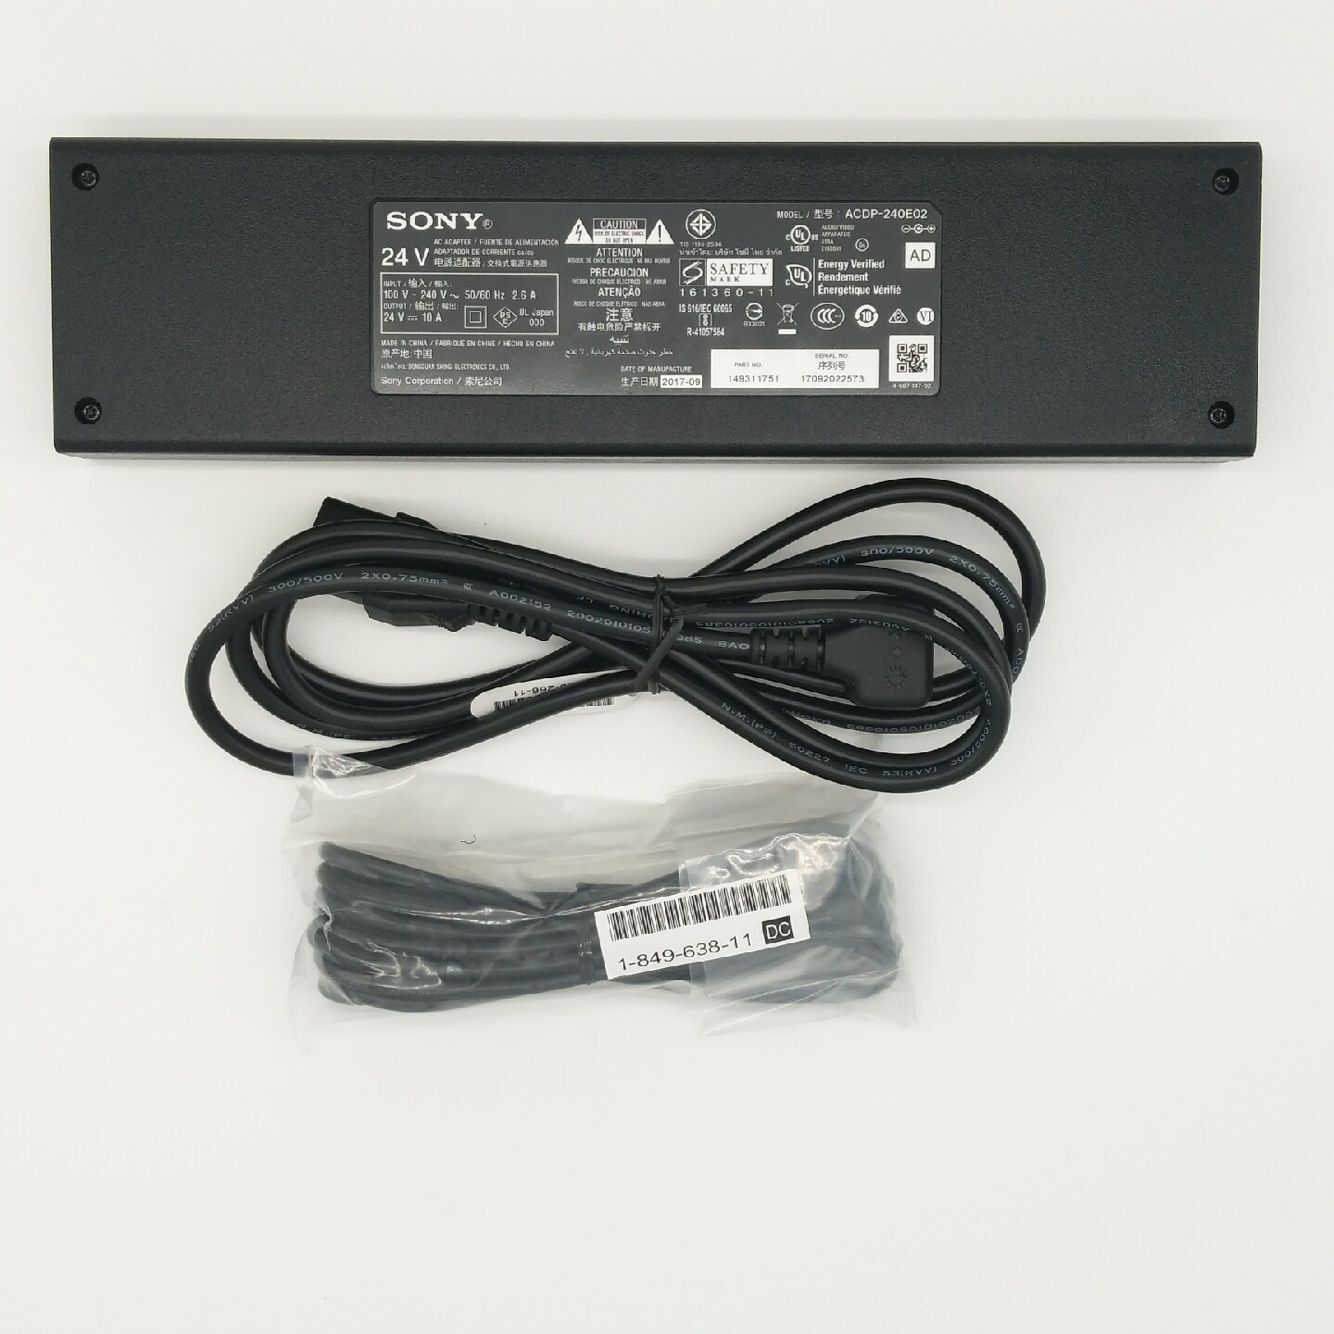 Original 240W Sony 1-493-117-31 acdp-240e02 AC Adaptor